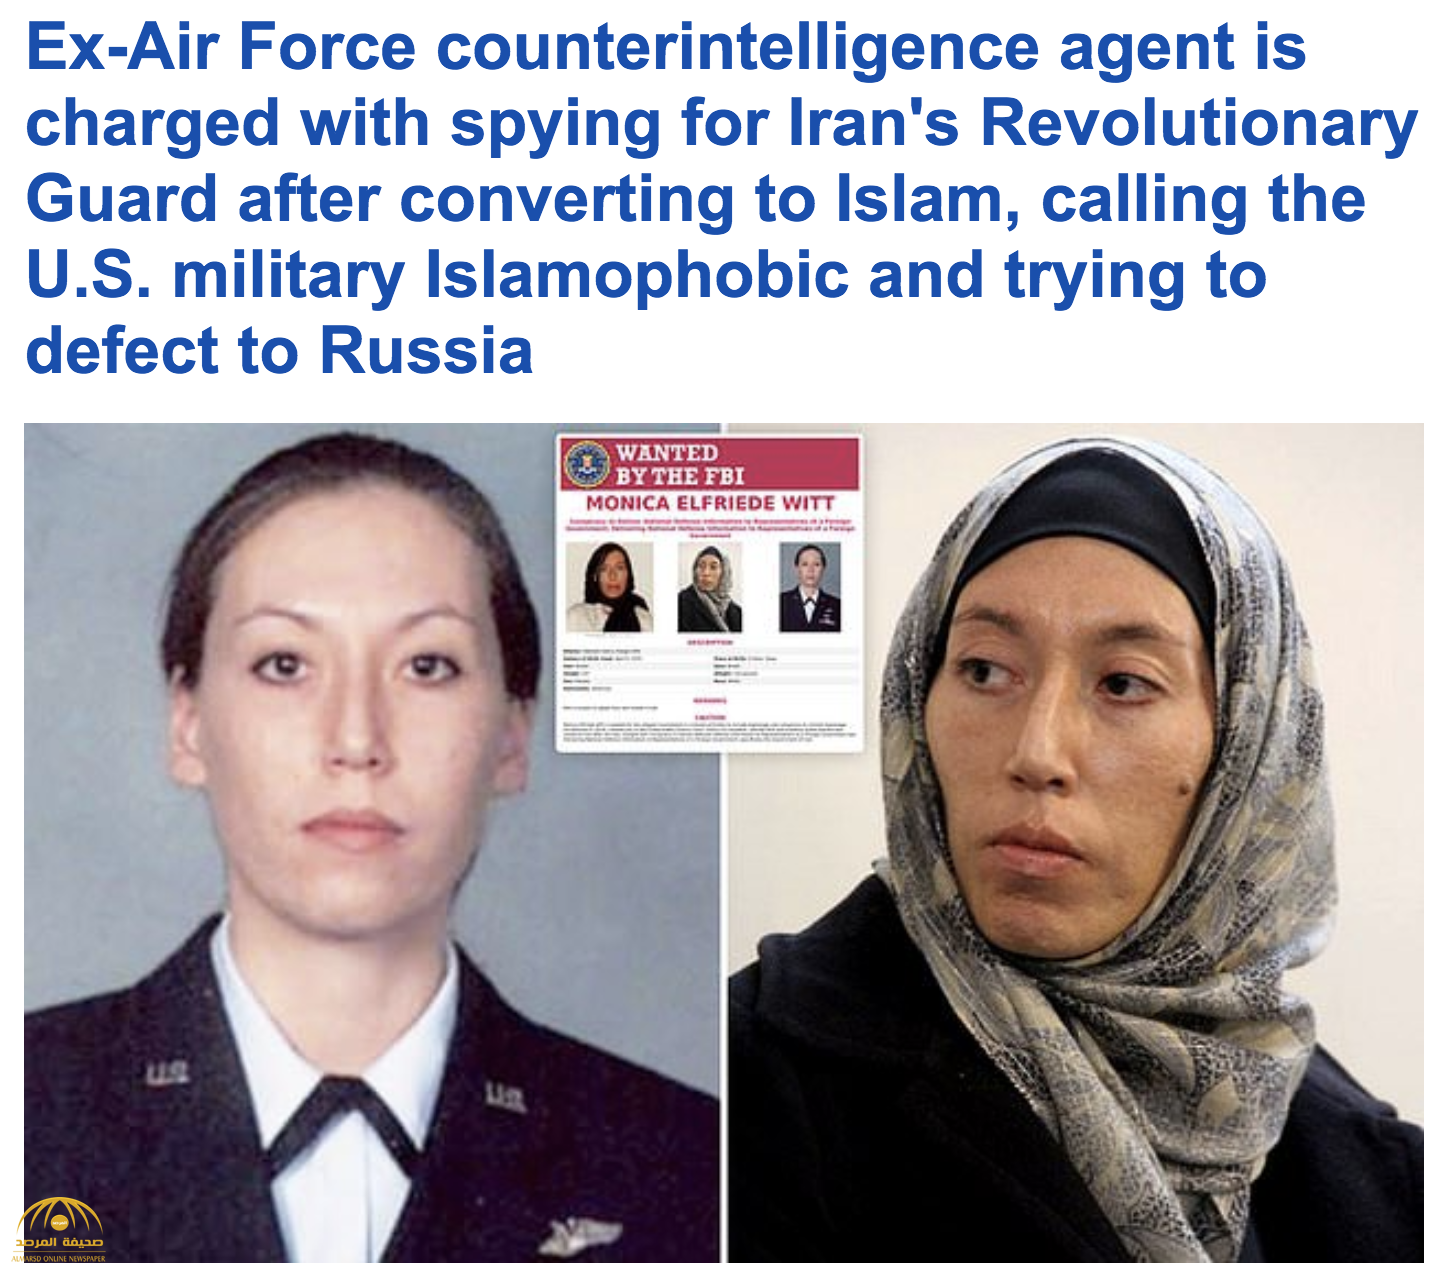 ضابطة لمكافحة التجسس بالجيش الأميركي .. "عميلة" لإيران"